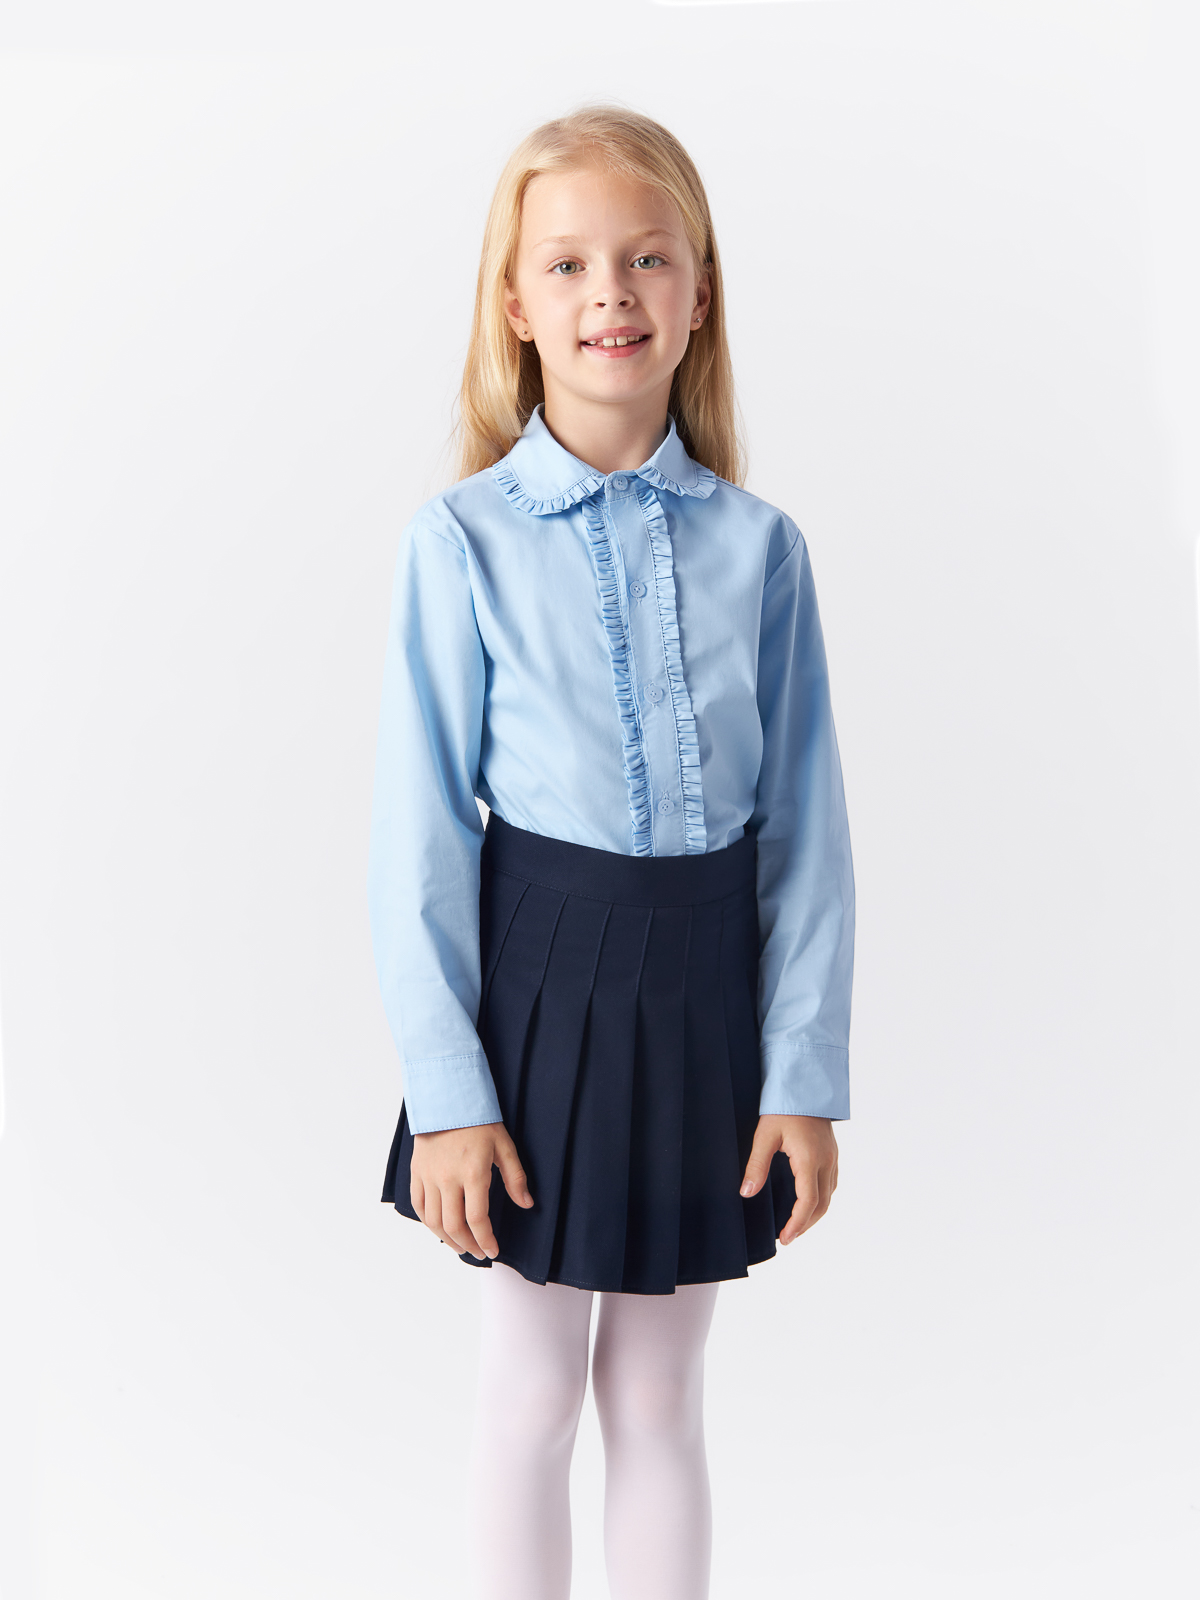 Блузка Yiwu Xflot Supply Chain детская, BS-2blue, размер 160 см блузка классическая с принтом сердечко белая button blue 128